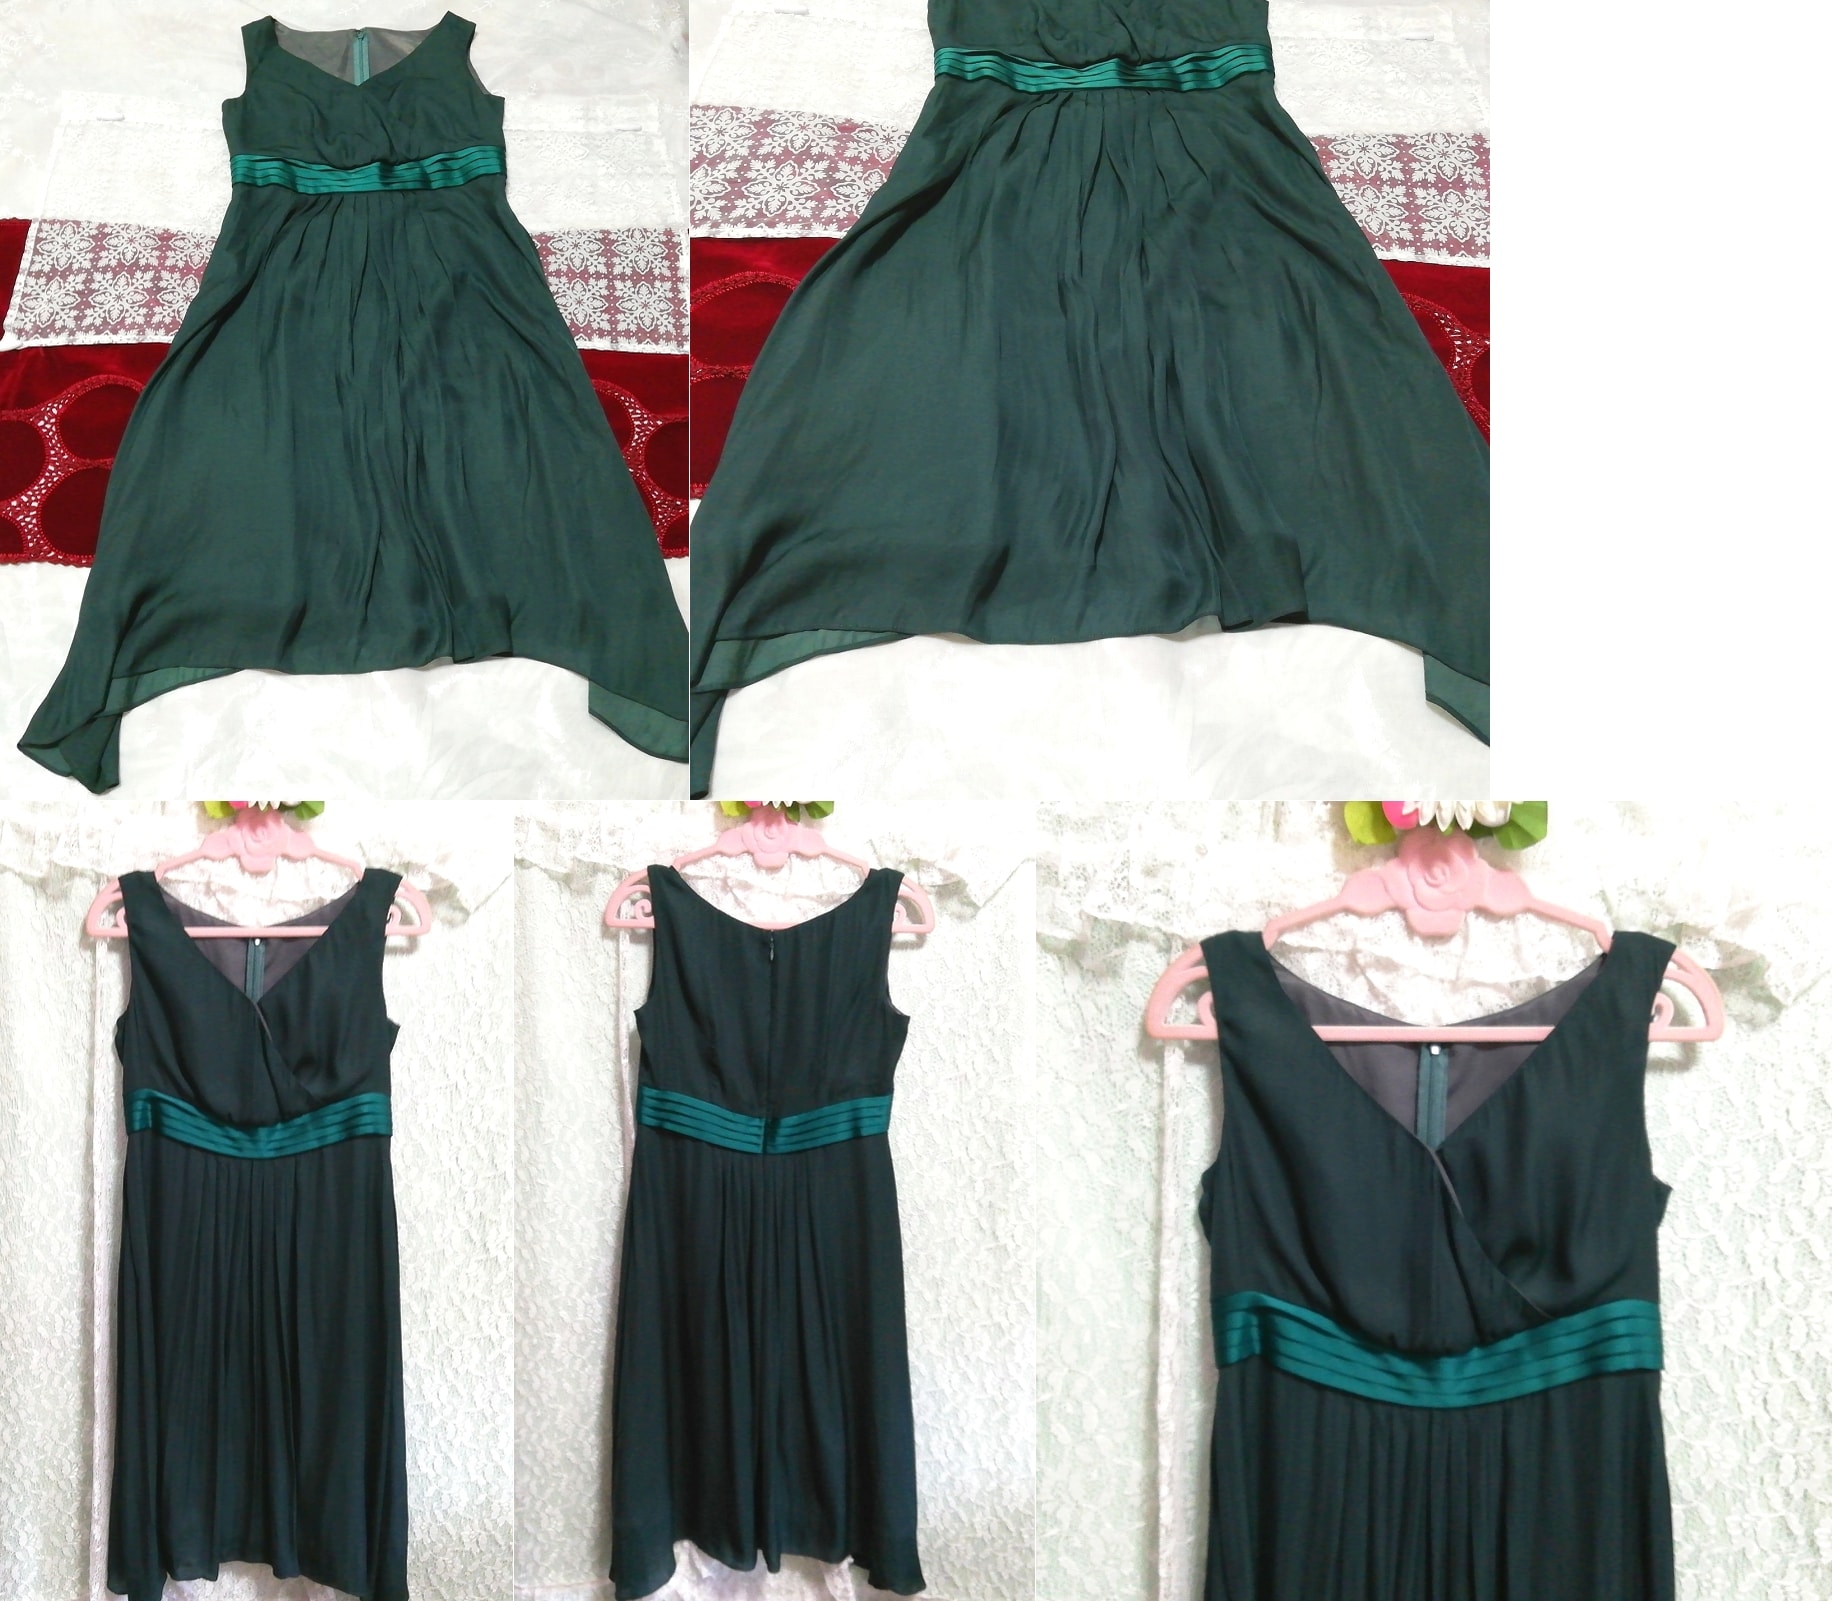 짙은 녹색 쉬폰 새틴 오비 네글리제 잠옷 잠옷 민소매 드레스, 패션, 숙녀 패션, 잠옷, 잠옷